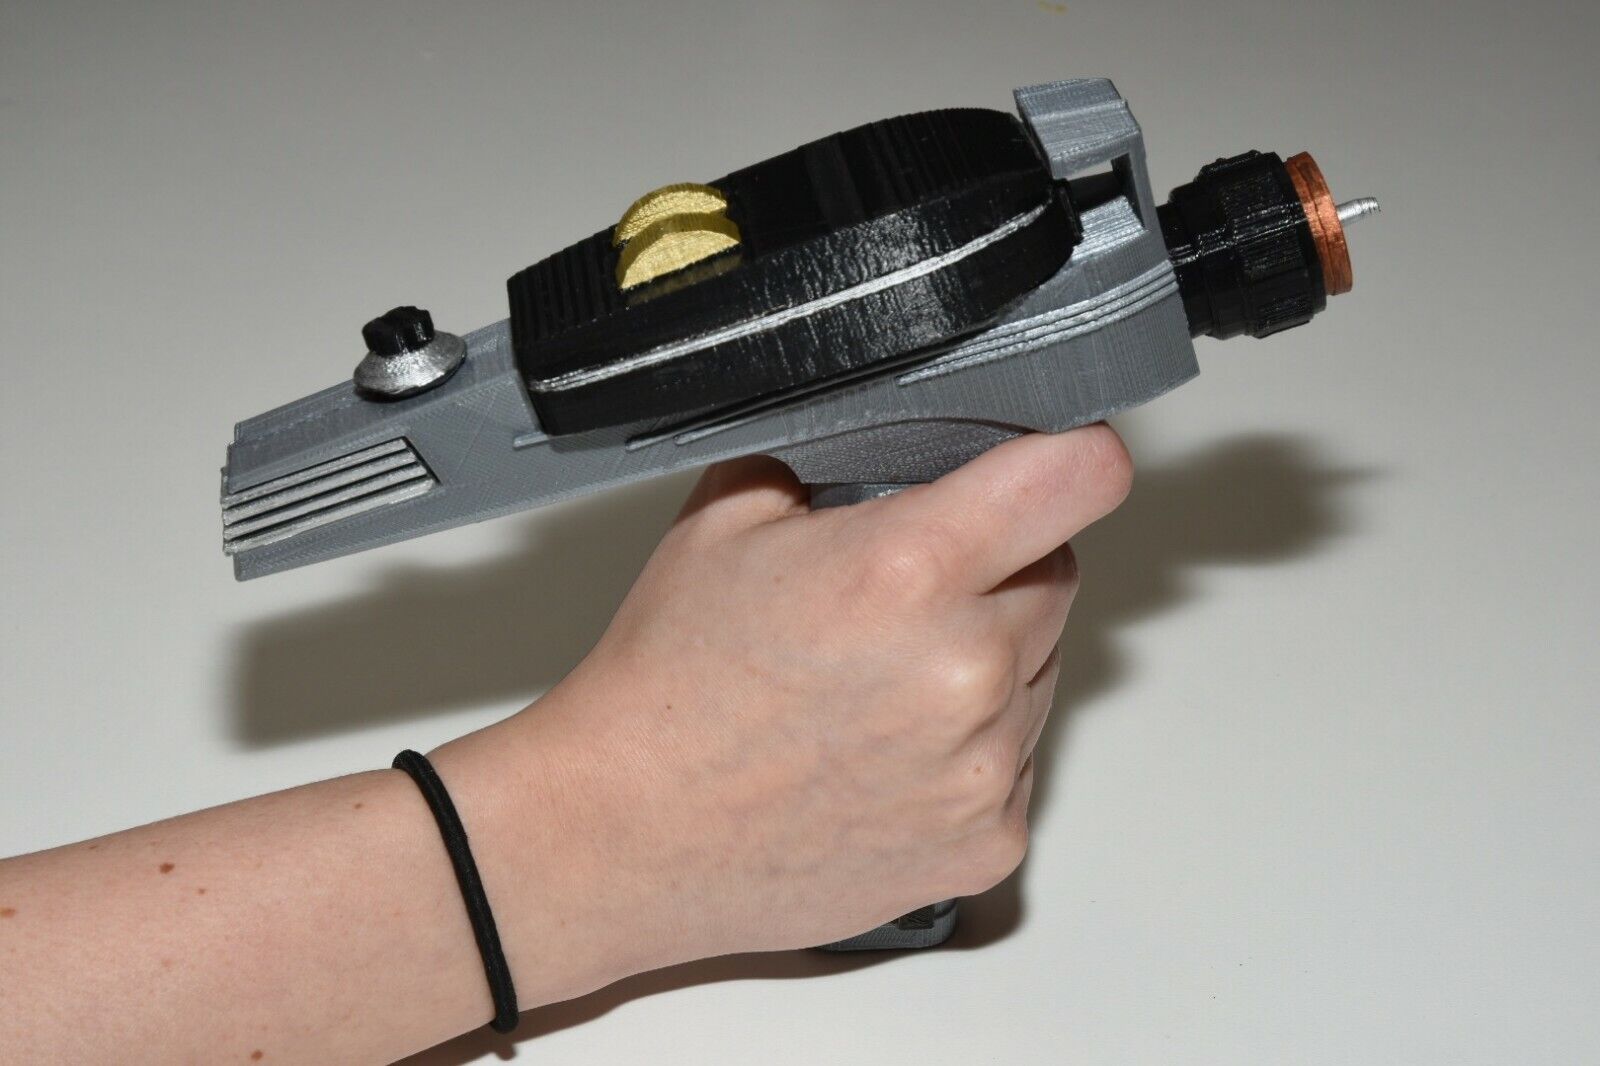 Star Trek “Original” Phaser Pistol prop KIT cos Play needs assembly 